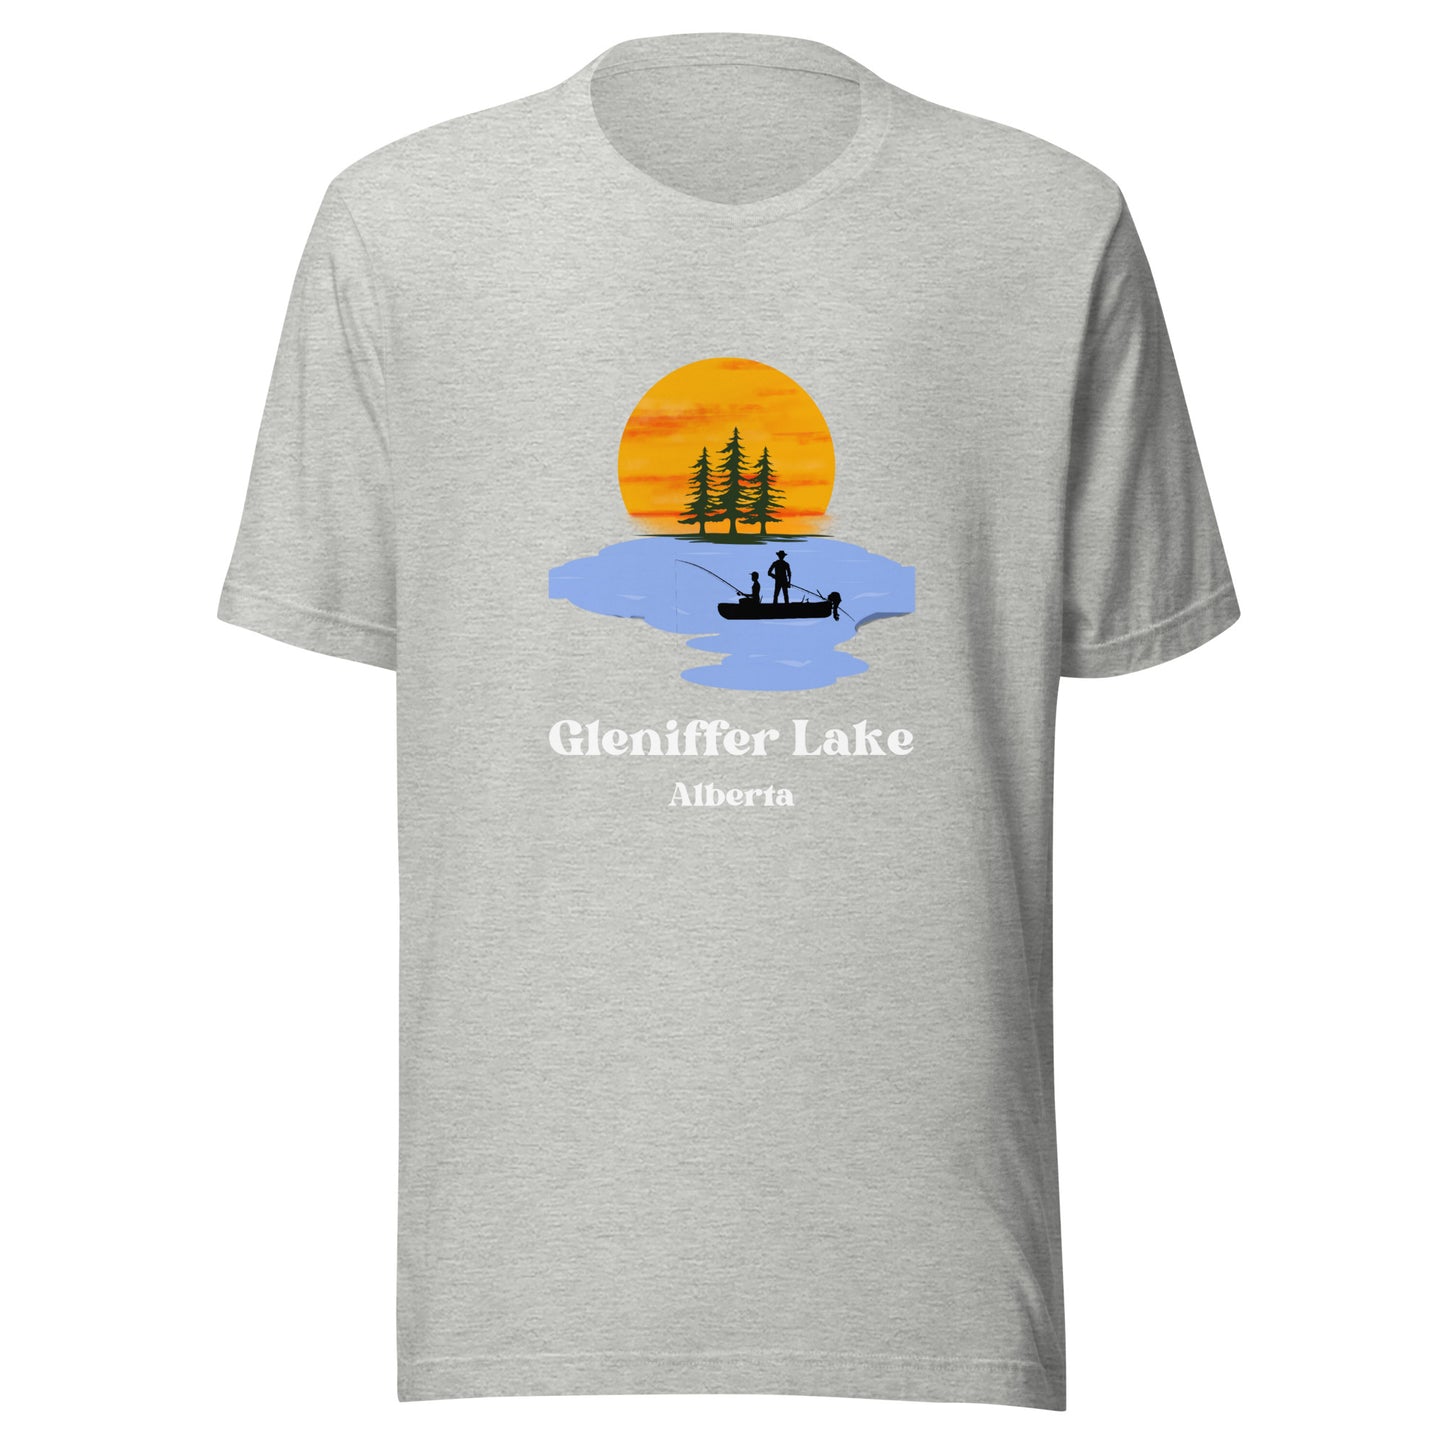 Gleniffer Lake, AB - T-Shirt Fishing